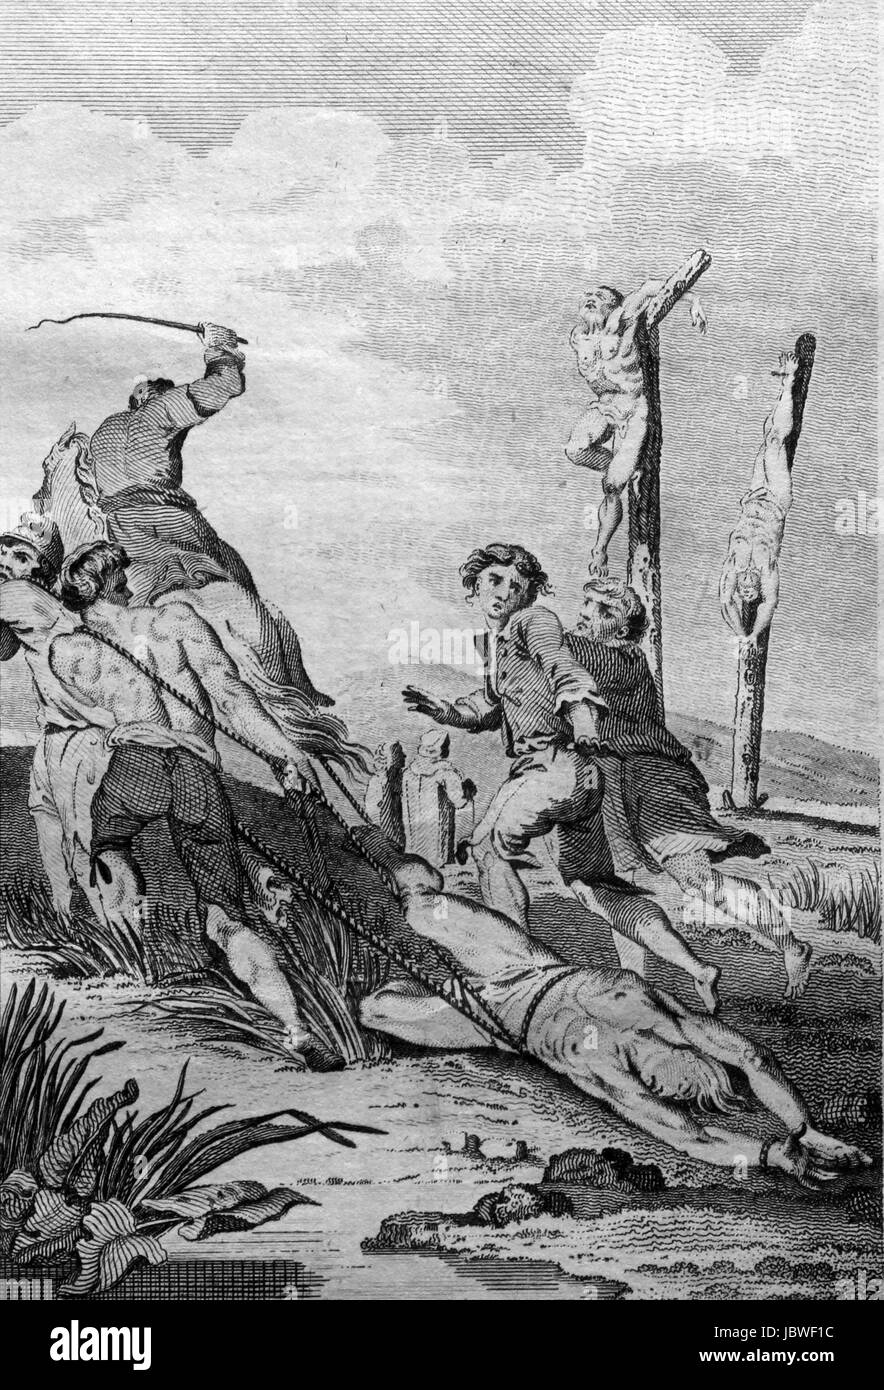 Protestanten durch Sümpfe geschleift und an Spannkluppen Haken gehängt oder an Stangen befestigt, bis sie starben. Blutige irischen Massaker 1642. Gravur von c 1780 Stockfoto